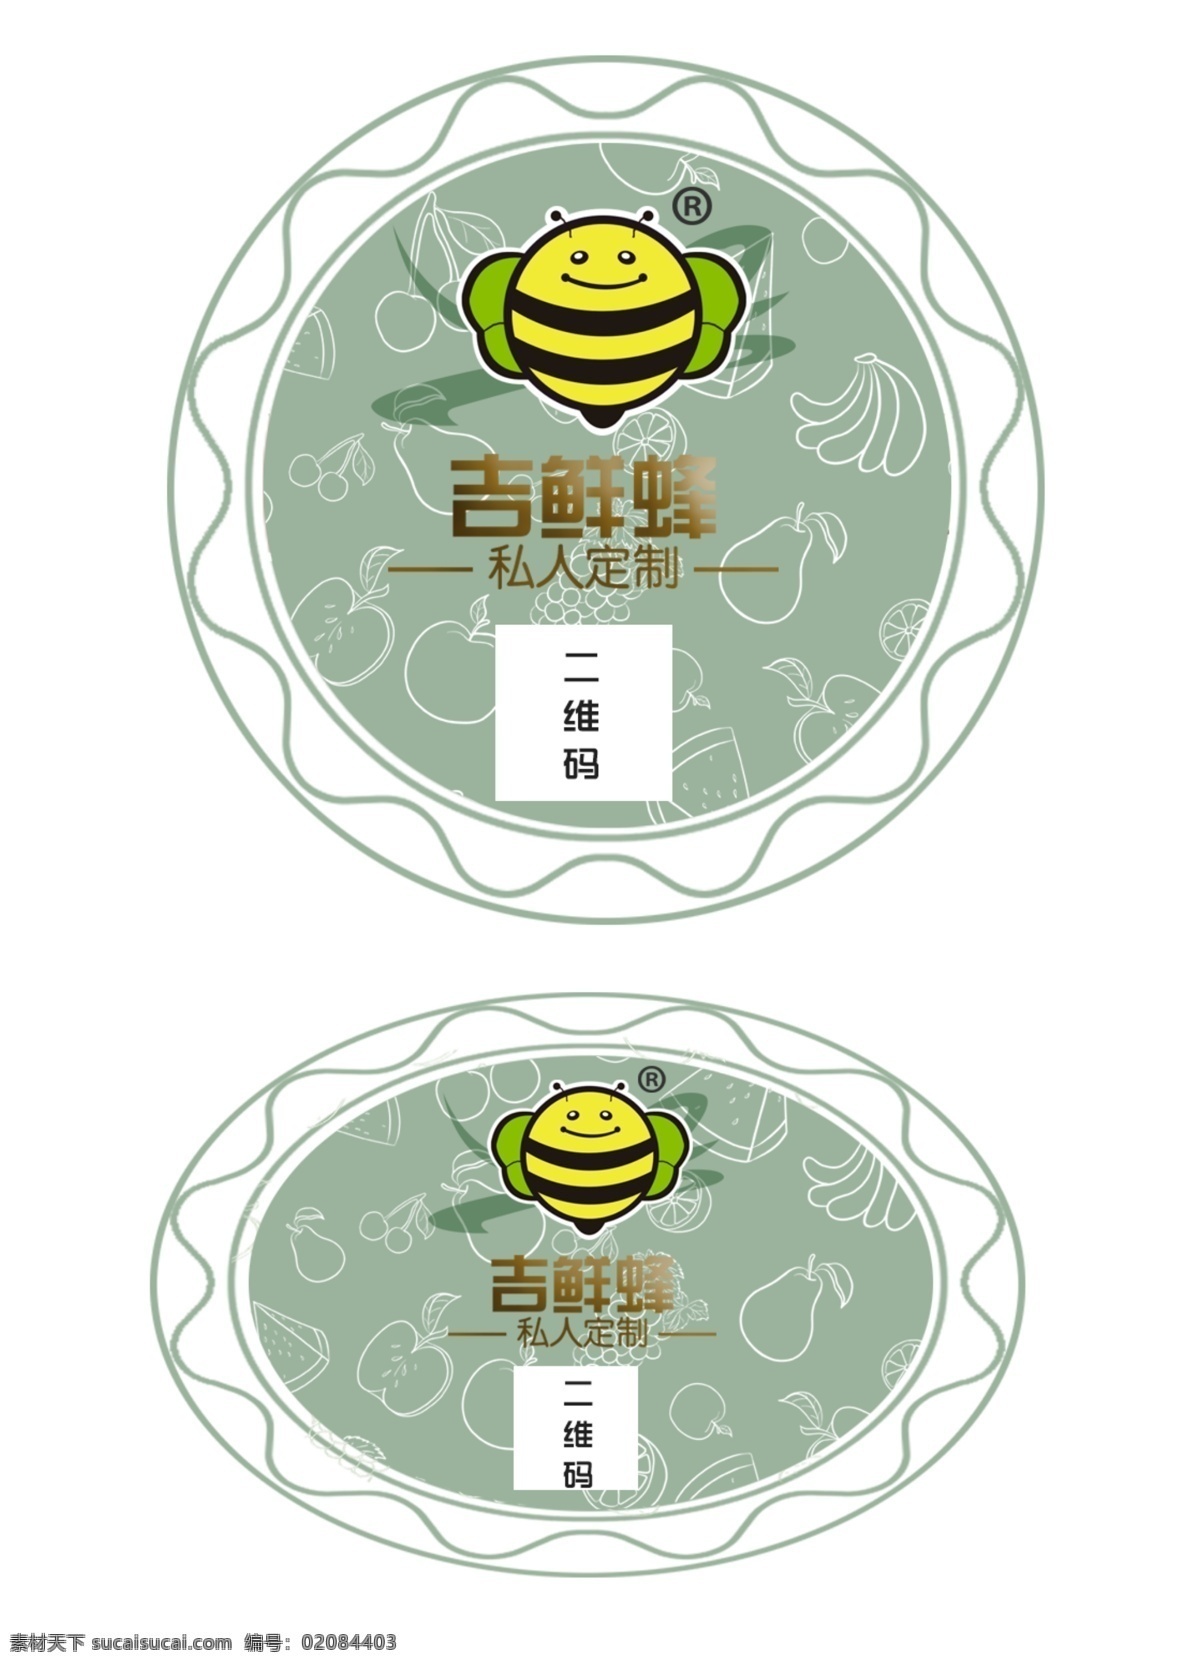 包装标签设计 包装盒标签 logo标签 标签设计 小圆标签 水果商城标签 分层